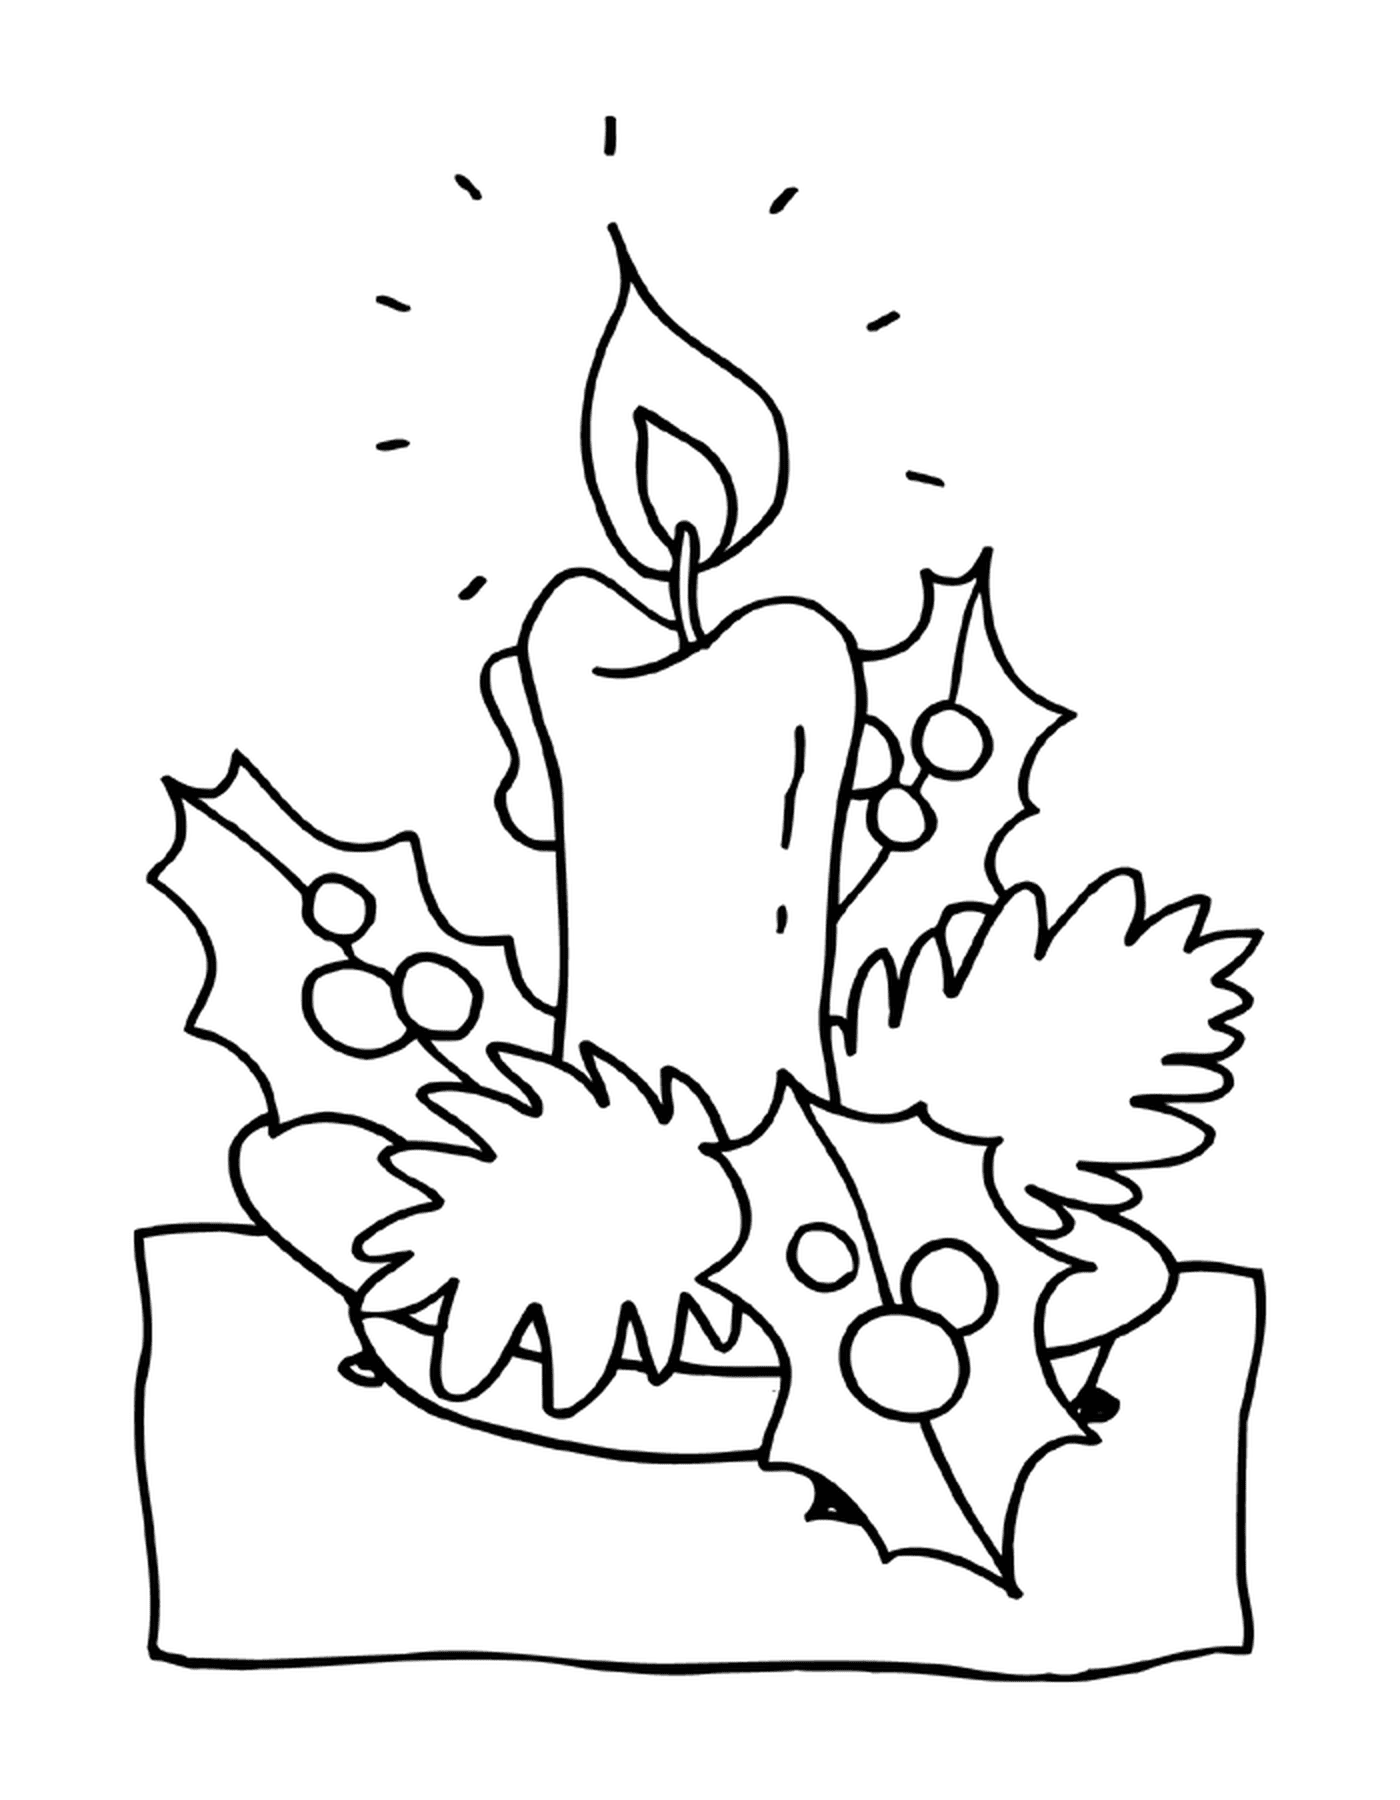  Una candela 